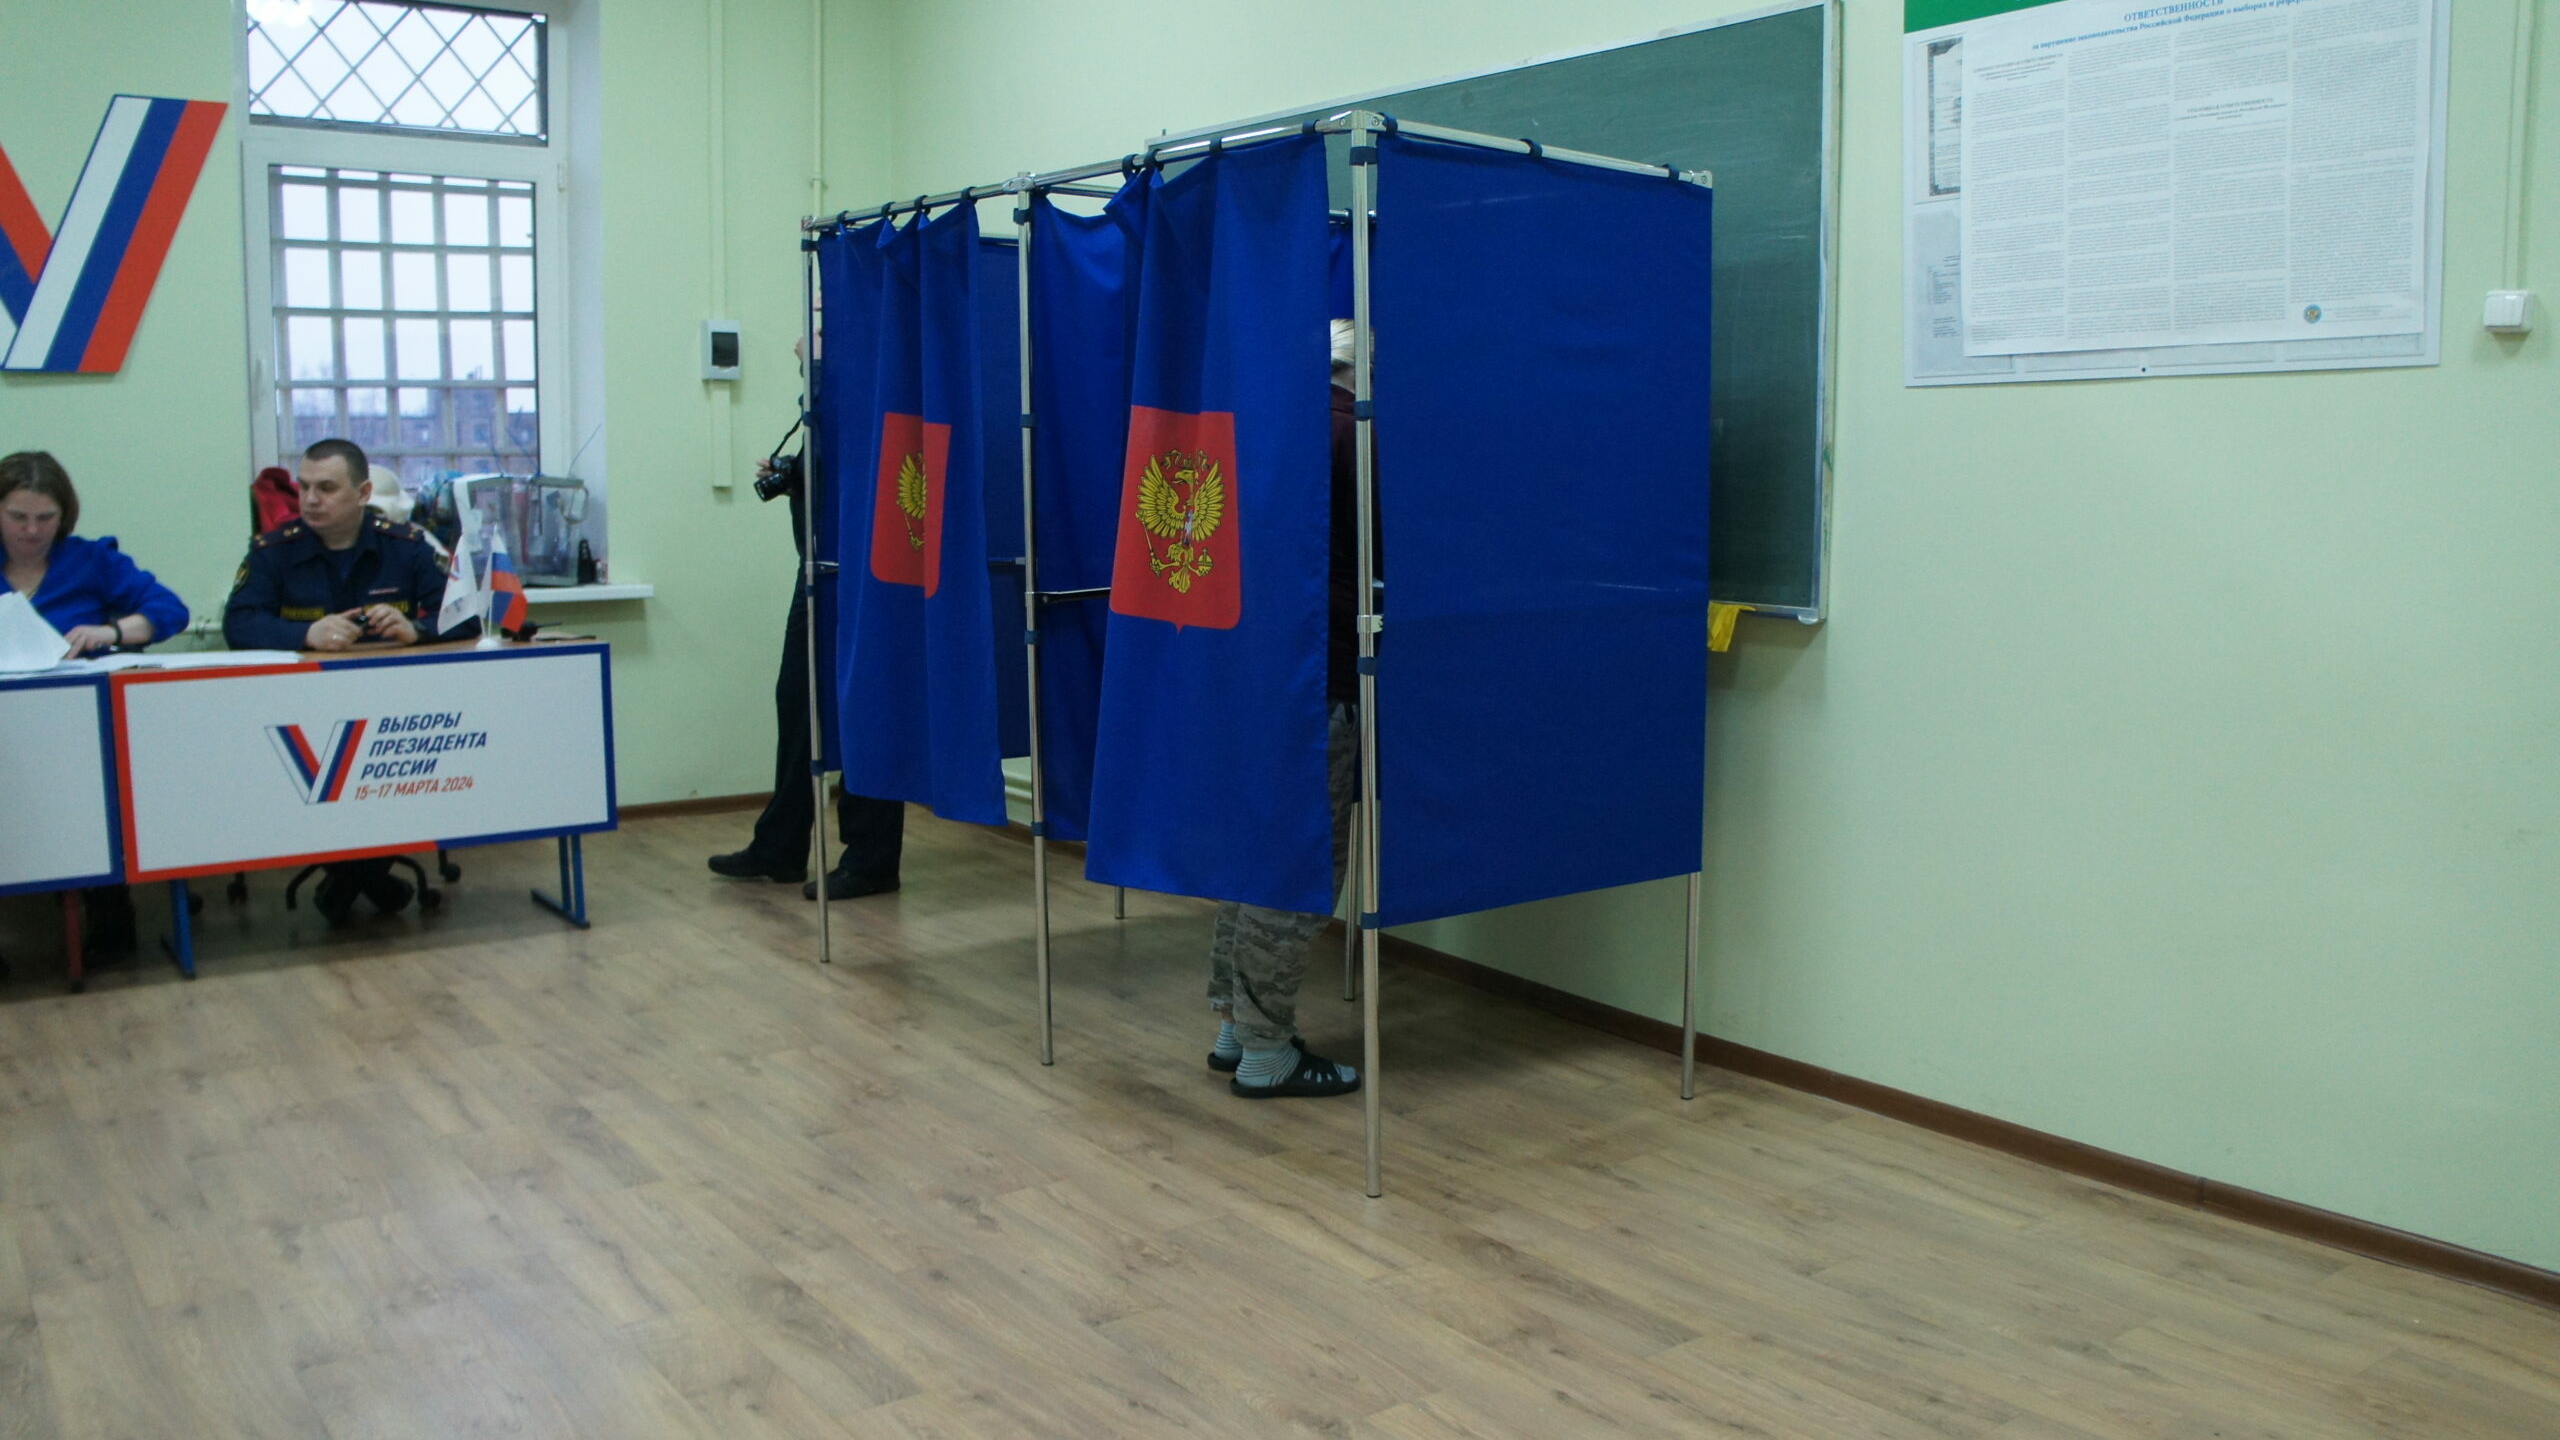 Политолог Шаповалов отметил дружелюбную атмосферу на избирательных участках Петербурга